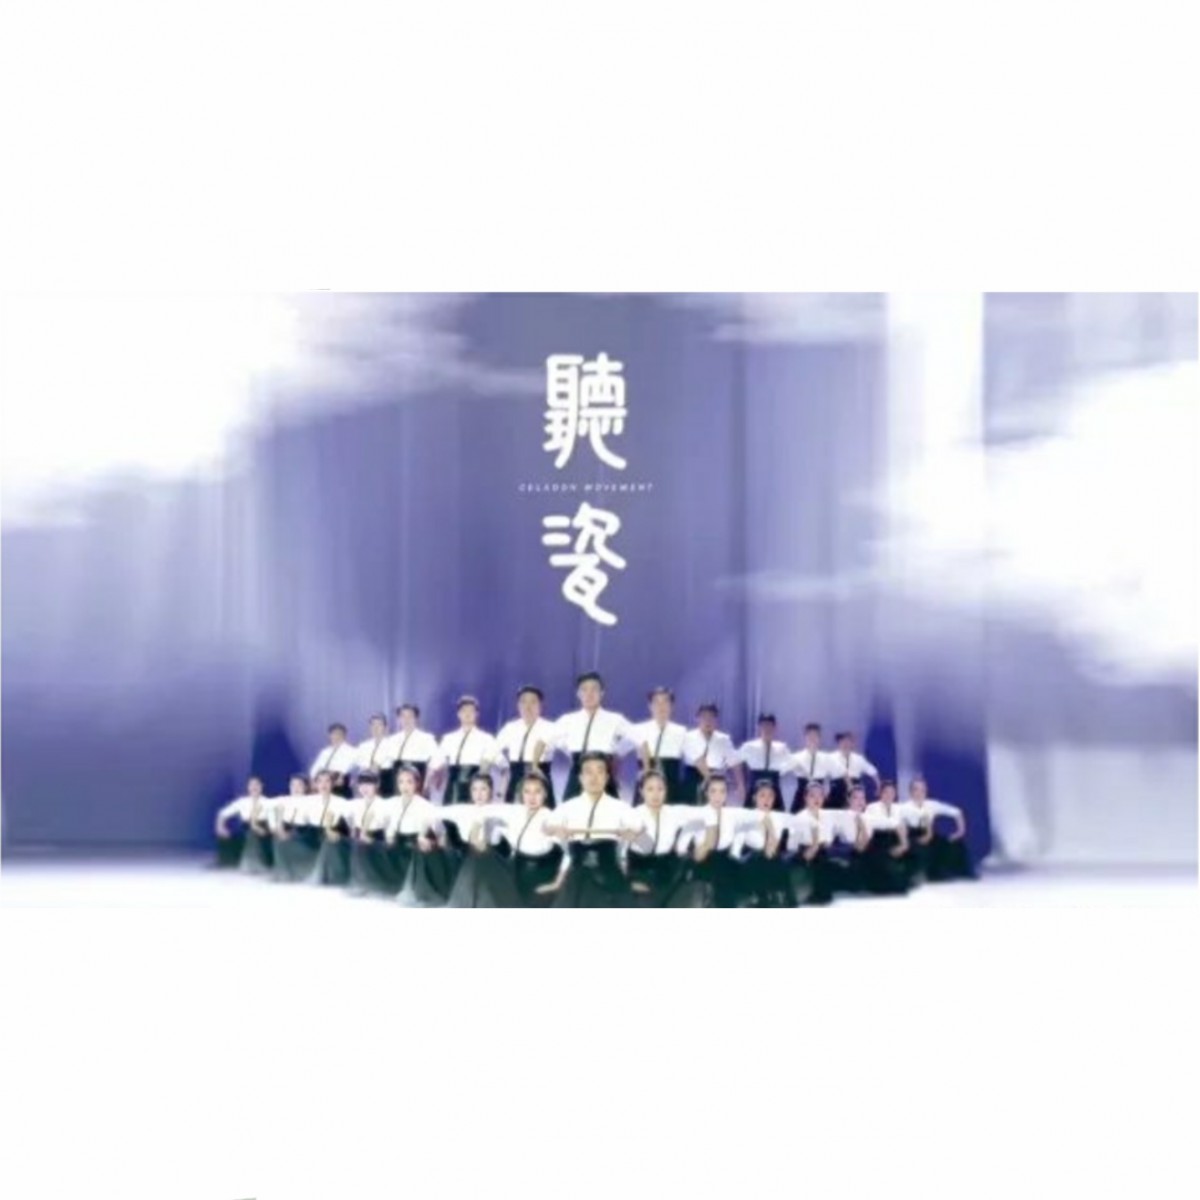 第四届越窑青瓷文化节闭幕仪式--青瓷瓯乐跨界融合作品《听瓷》今日首演